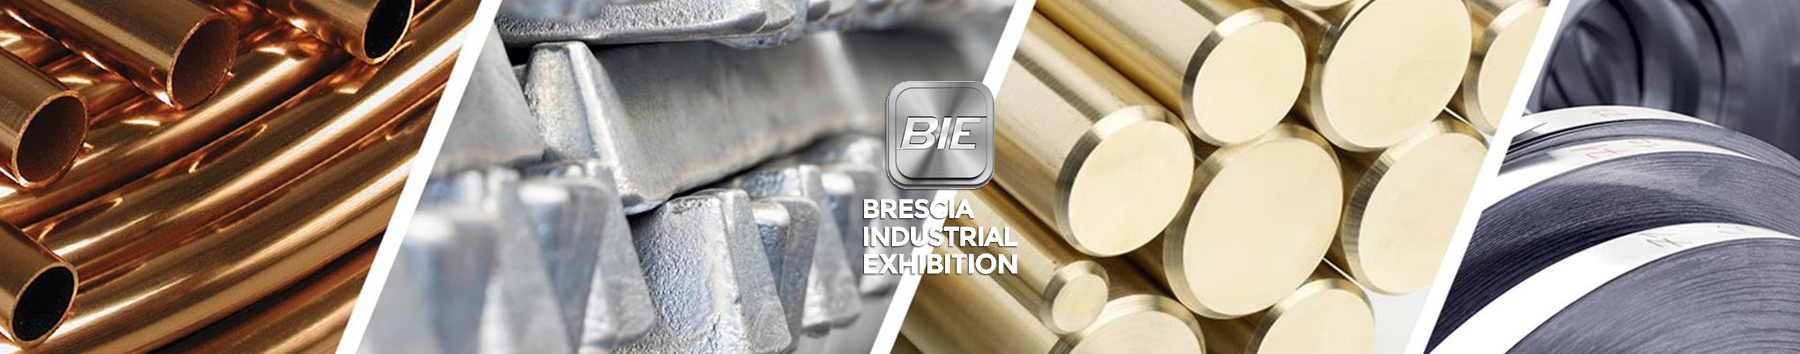 BIE - Brescia Industrial Exhibition